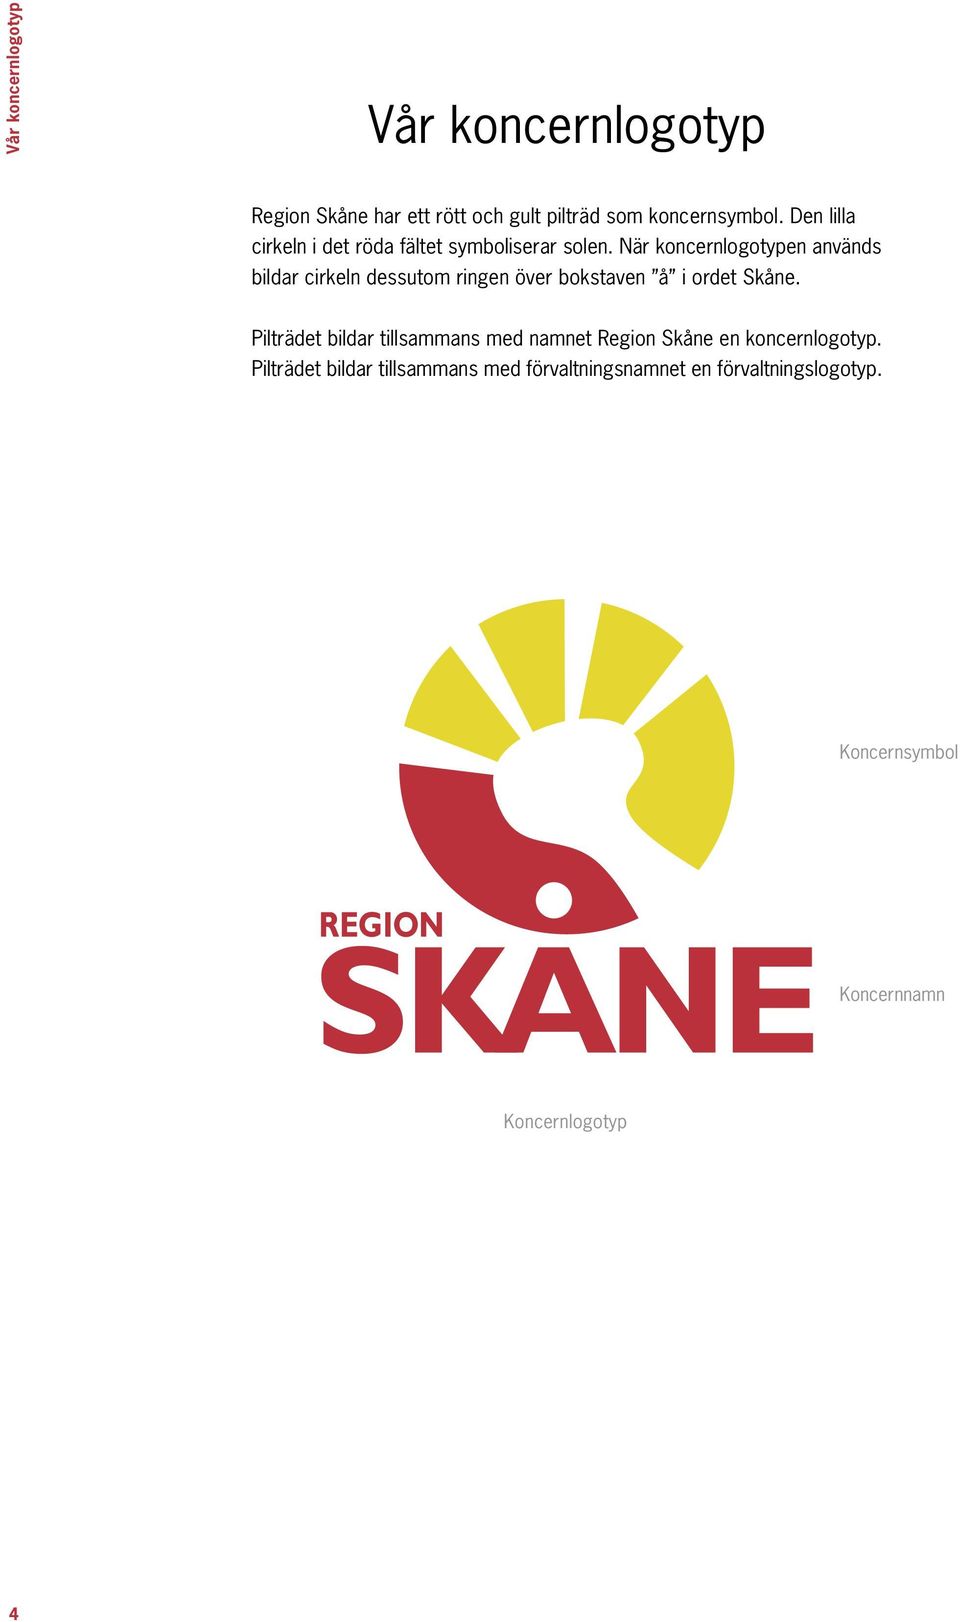 När koncernlogotypen används bildar cirkeln dessutom ringen över bokstaven å i ordet Skåne.